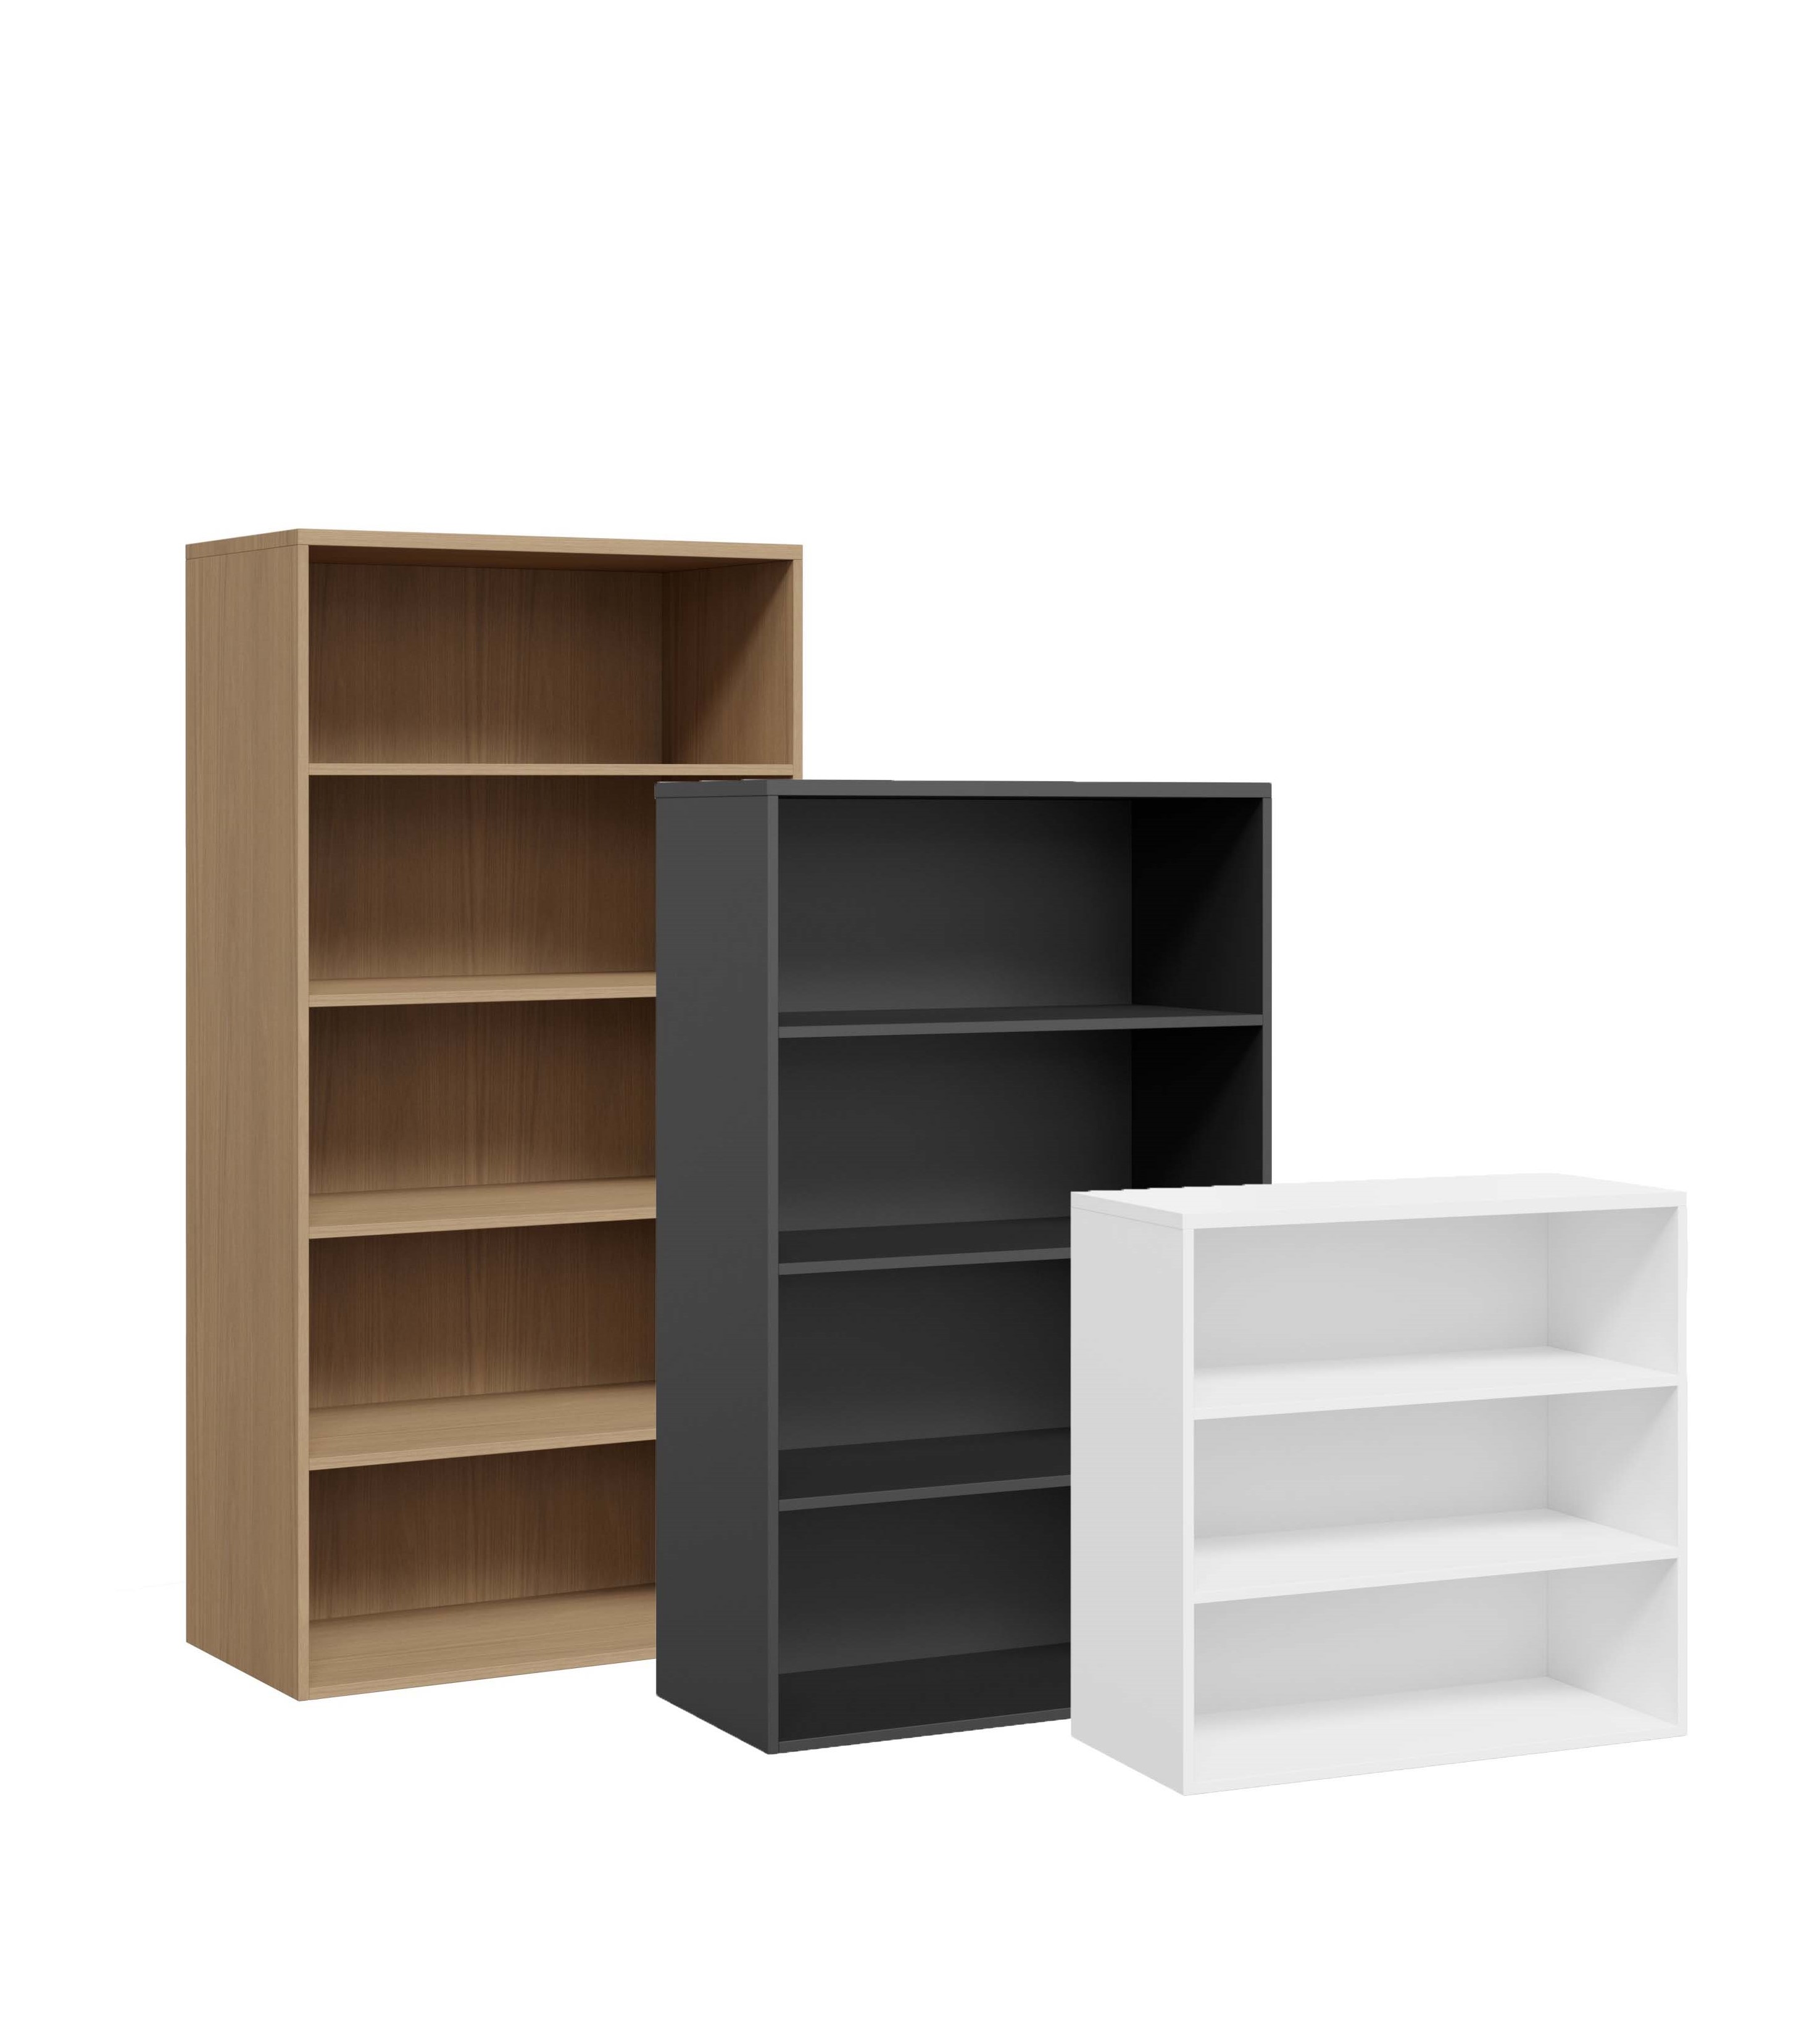 DK Open Bookshelf